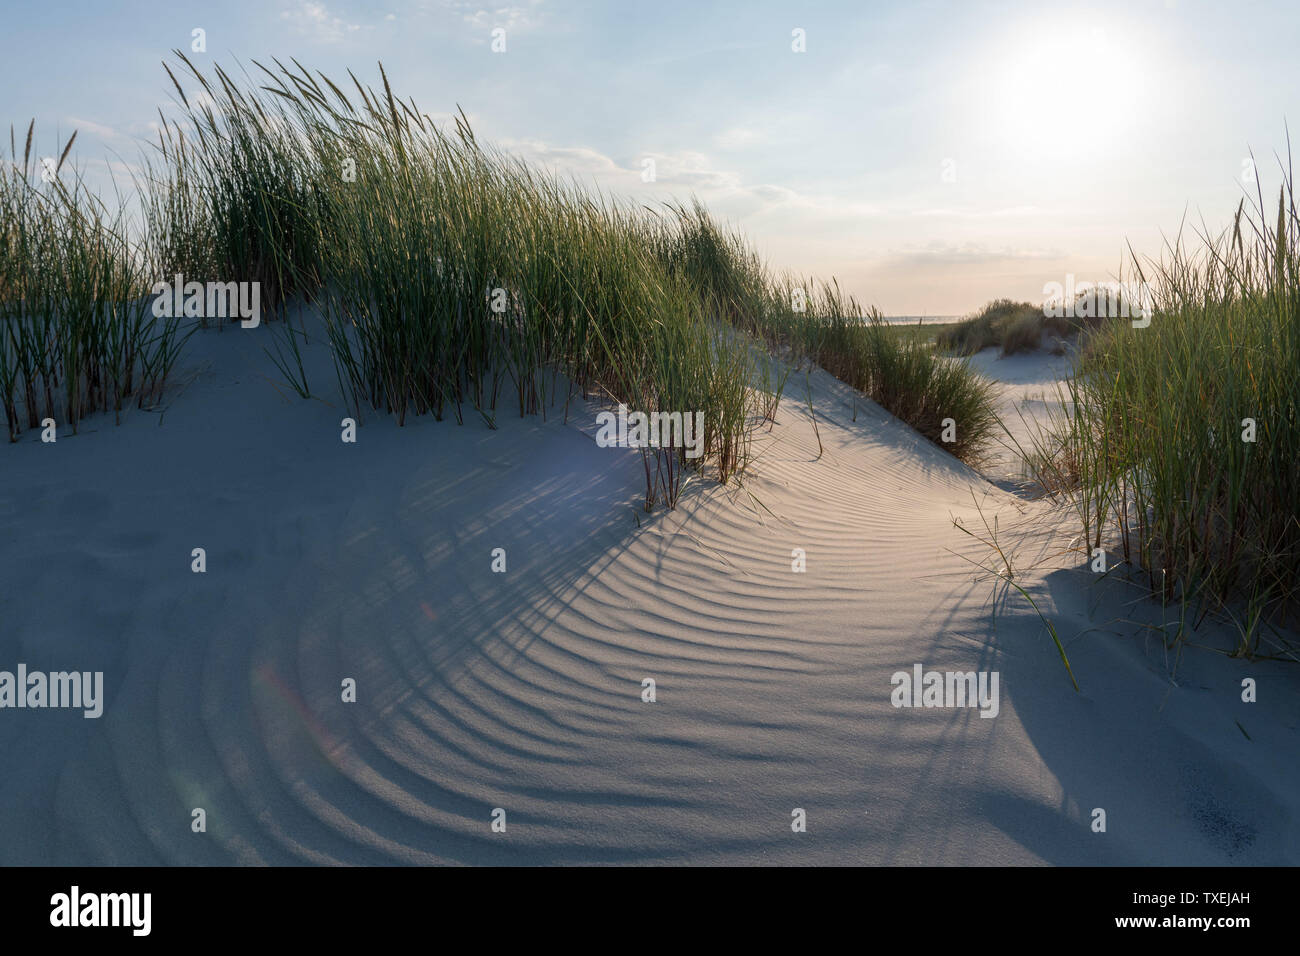 Des dunes de sable peu profondes, surcultivées avec de l'herbe sur l'île de Juist, en mer du Nord, se trouvent en face de la plage, au soleil. Banque D'Images